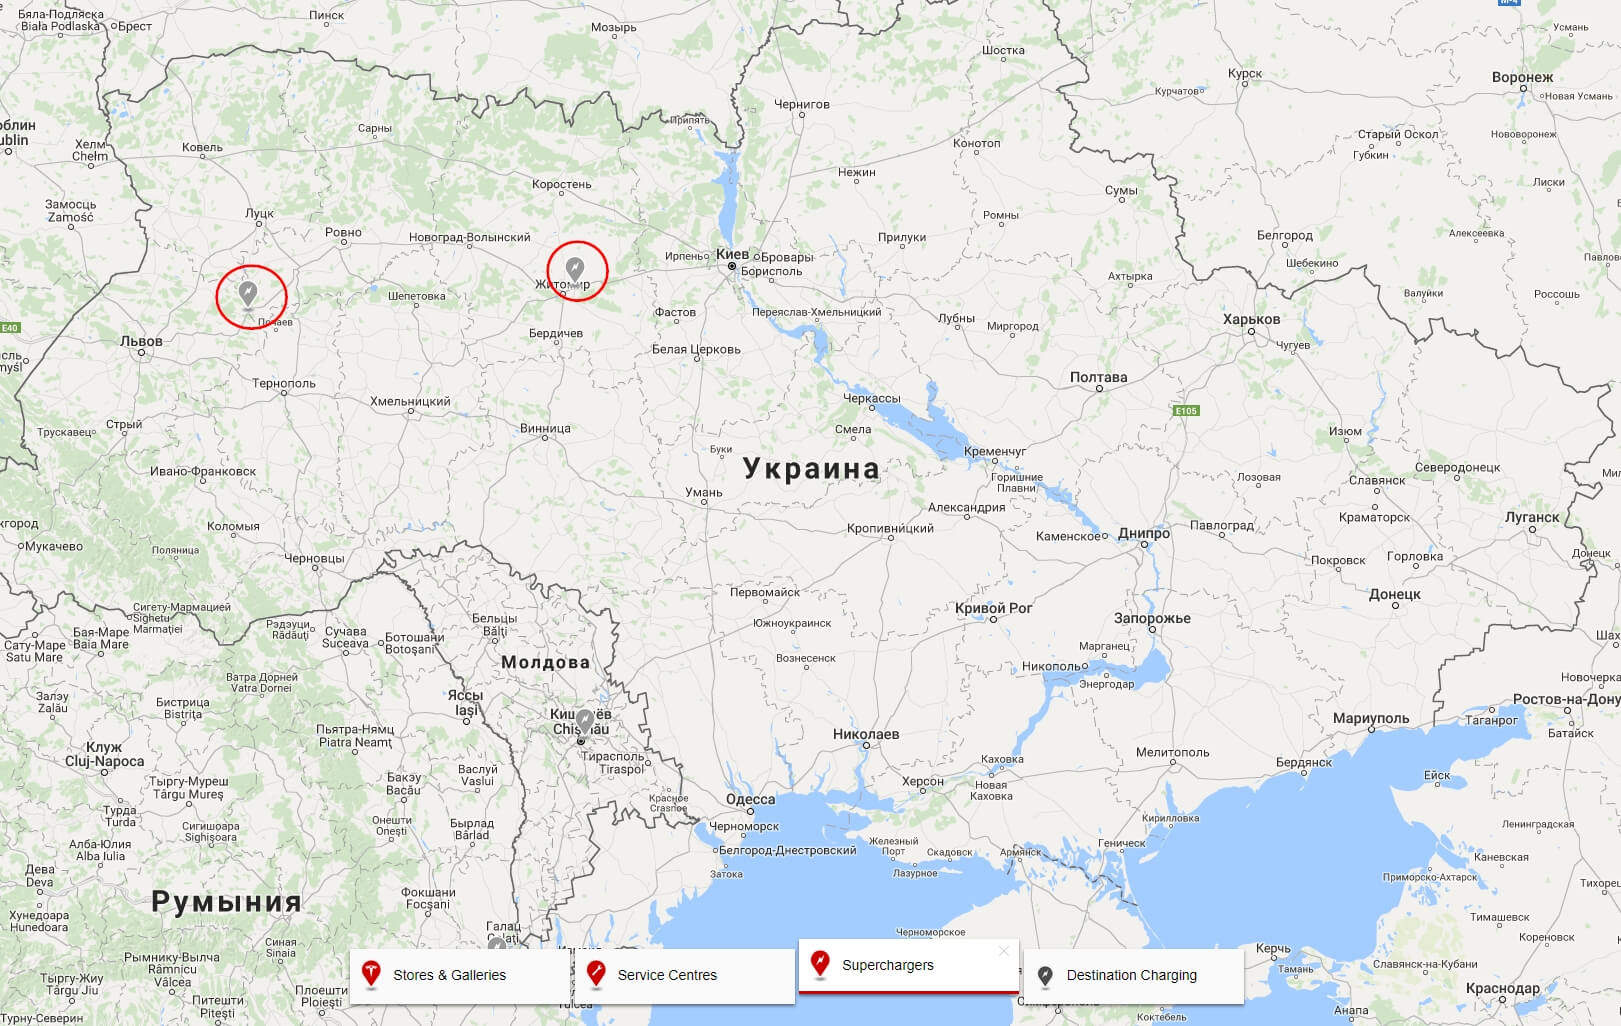 Запланированные для открытия зарядные станции Tesla Supercharger в Украине